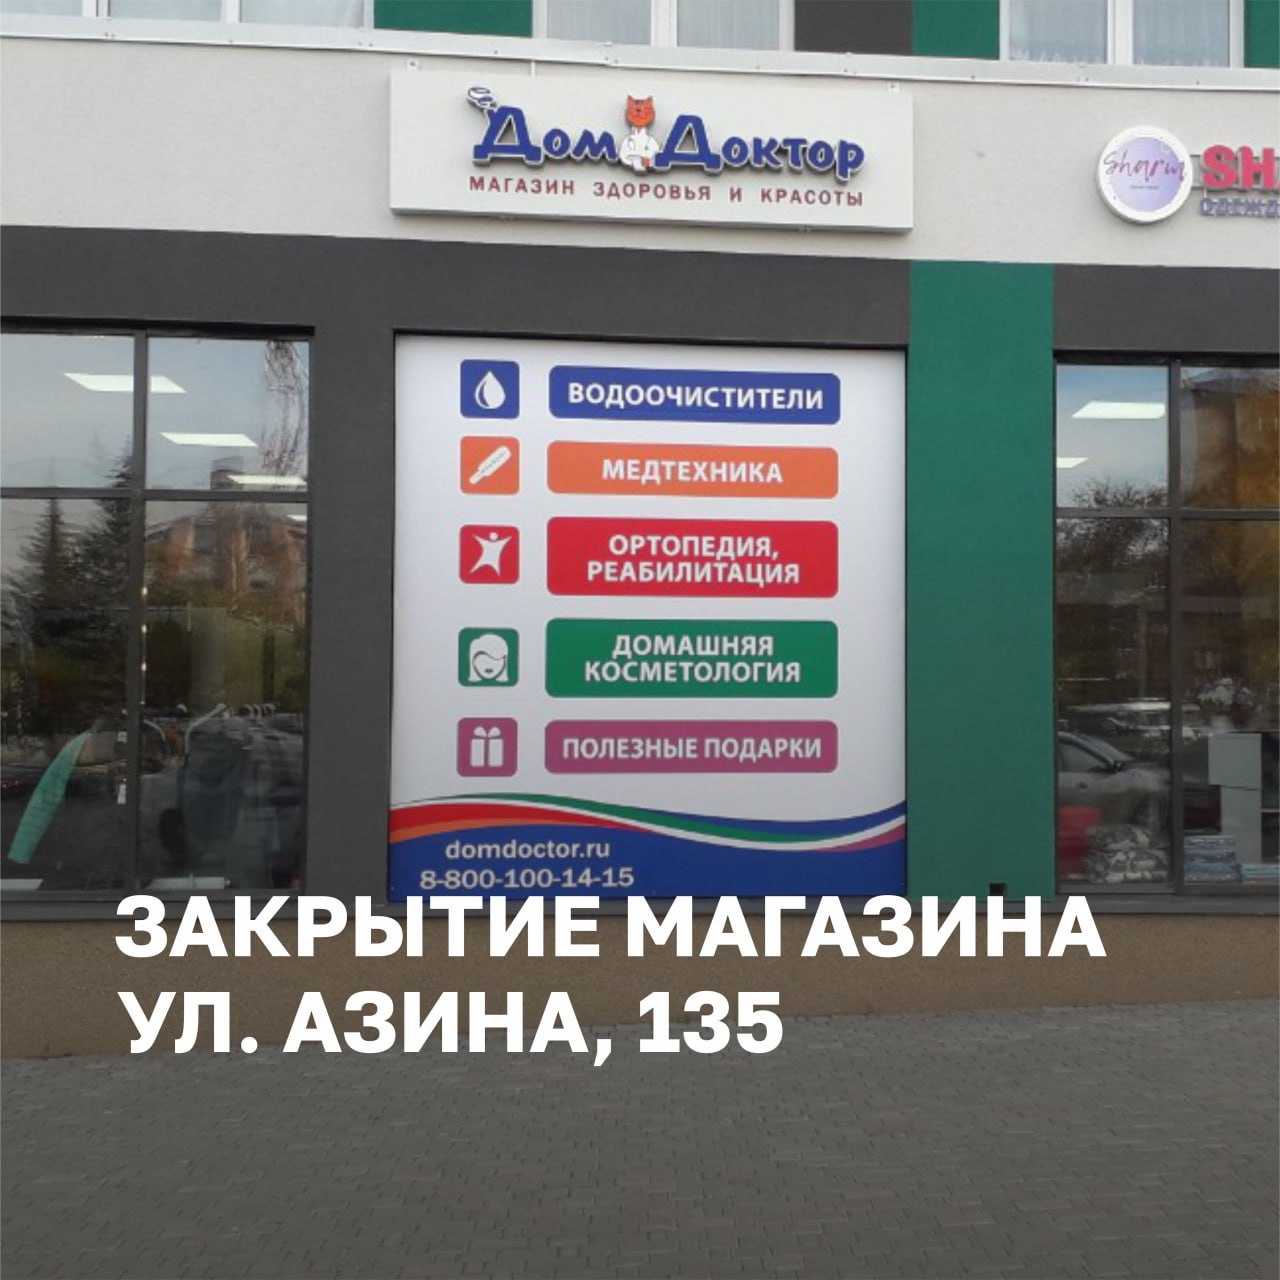 Магазин на Азина, 135 (ЖК "Видный"), г. Ижевск, закрыт